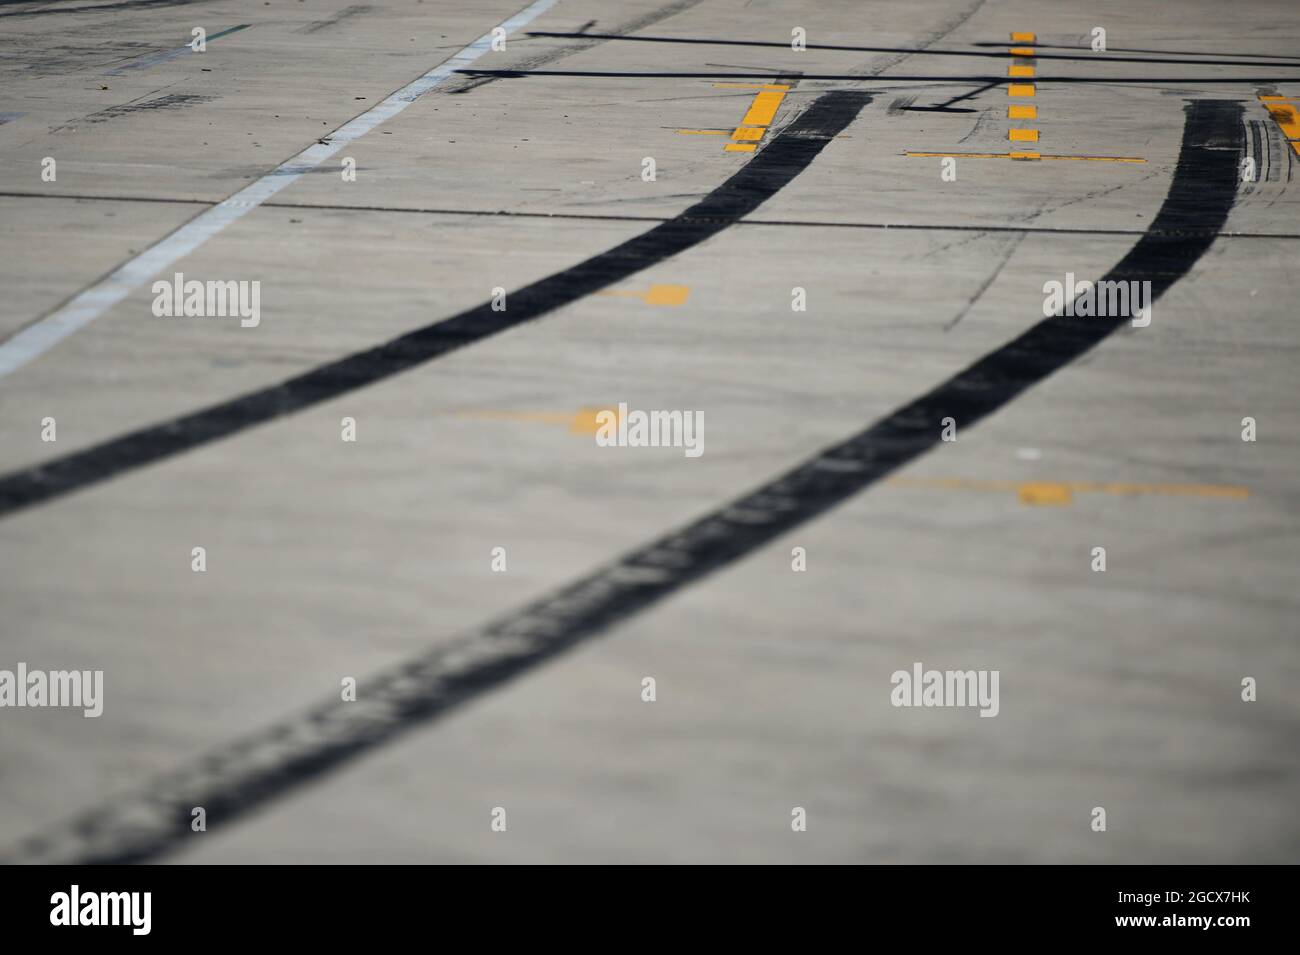 Pit Lane gomma posata. Gran Premio degli Stati Uniti, sabato 22 ottobre 2016. Circuito delle Americhe, Austin, Texas, USA. Foto Stock